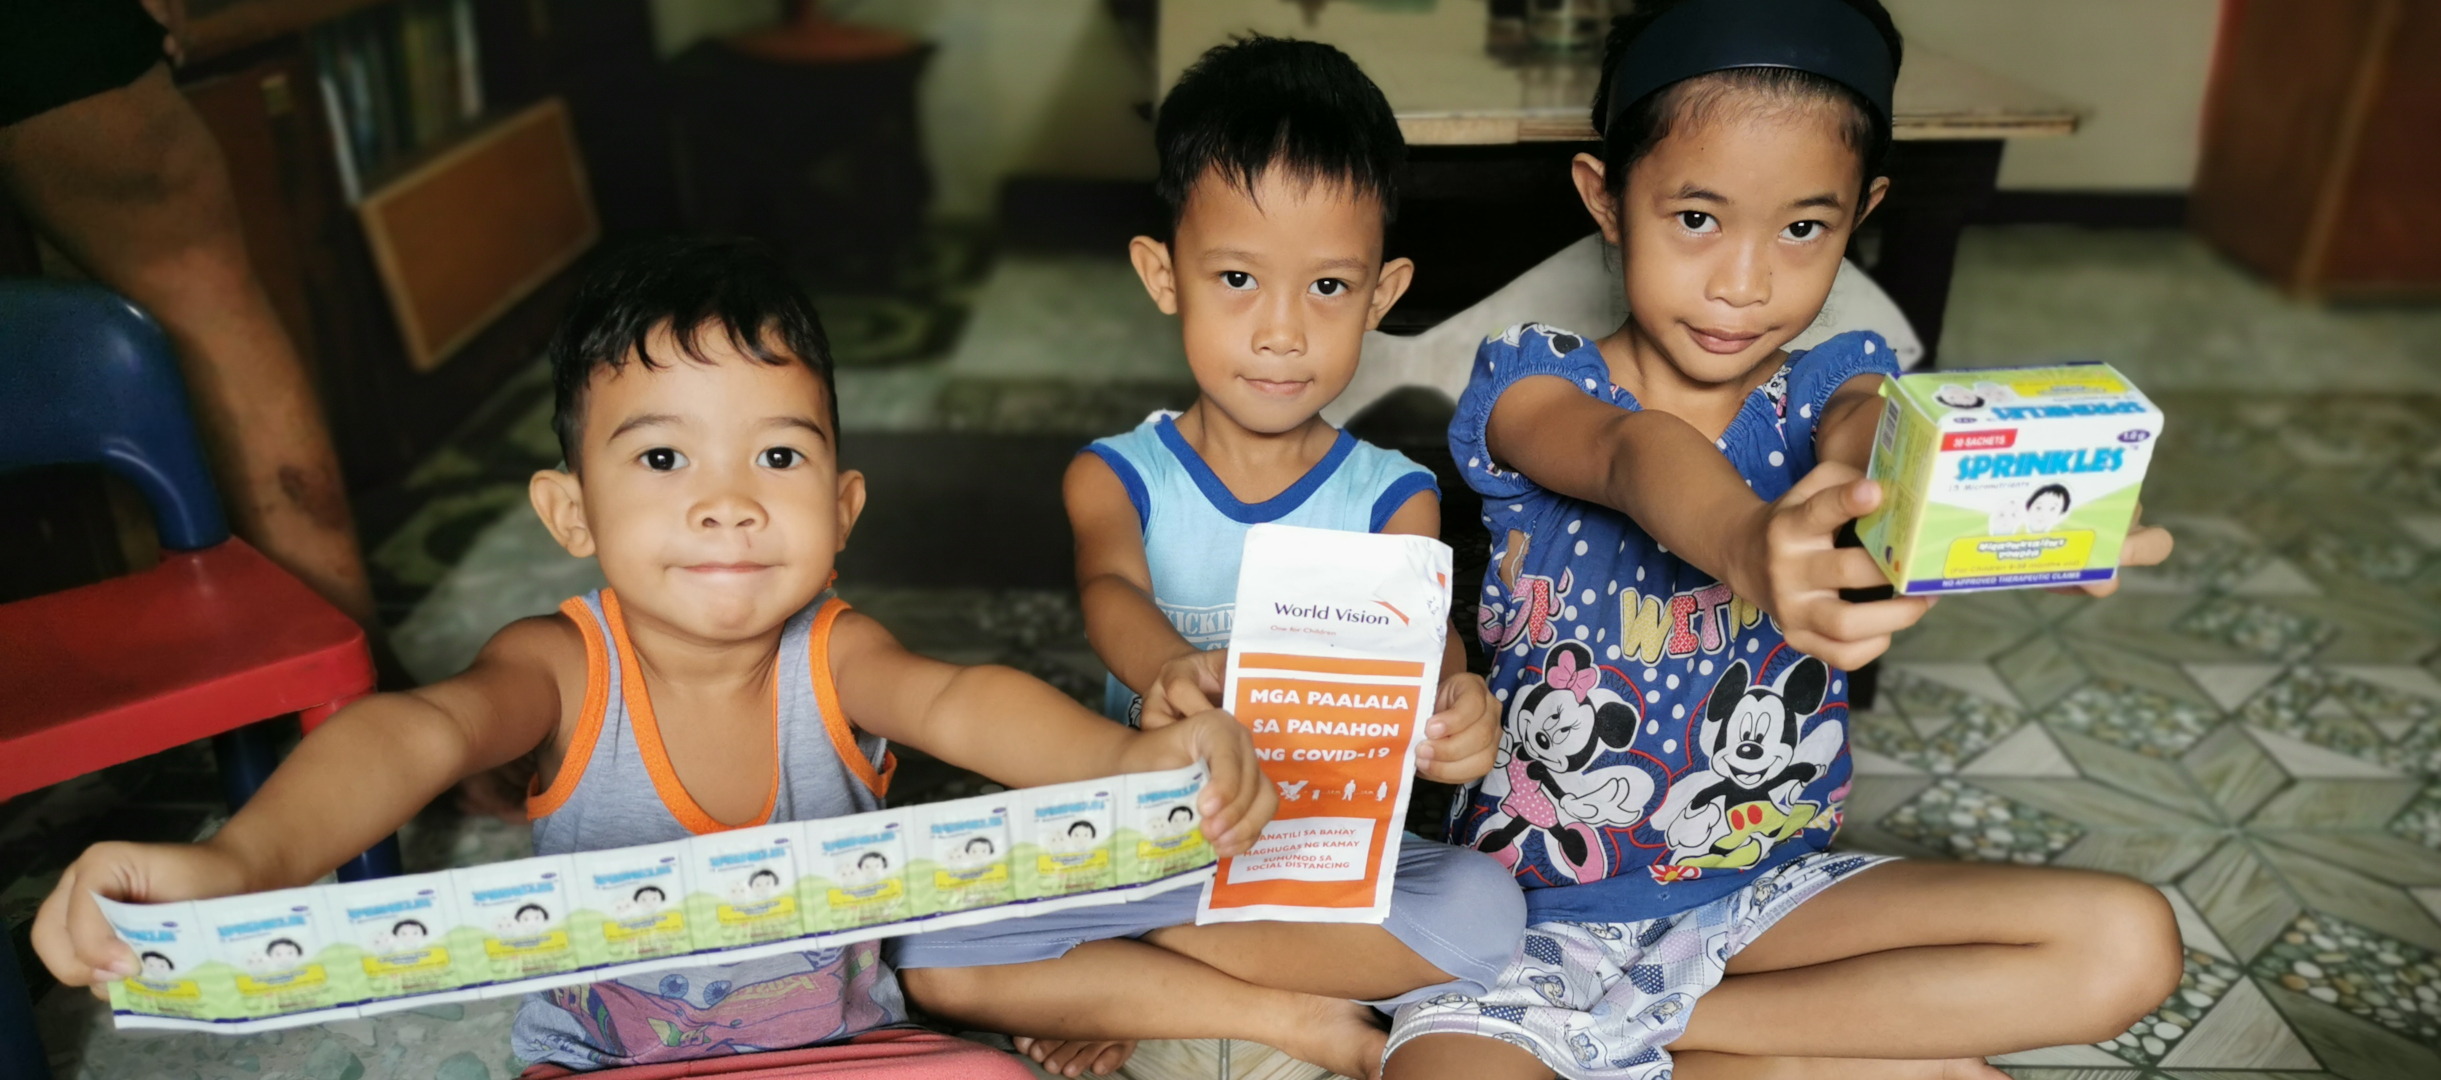 Kinder auf den Philippinen mit der erhaltenen Aufbaunahrung